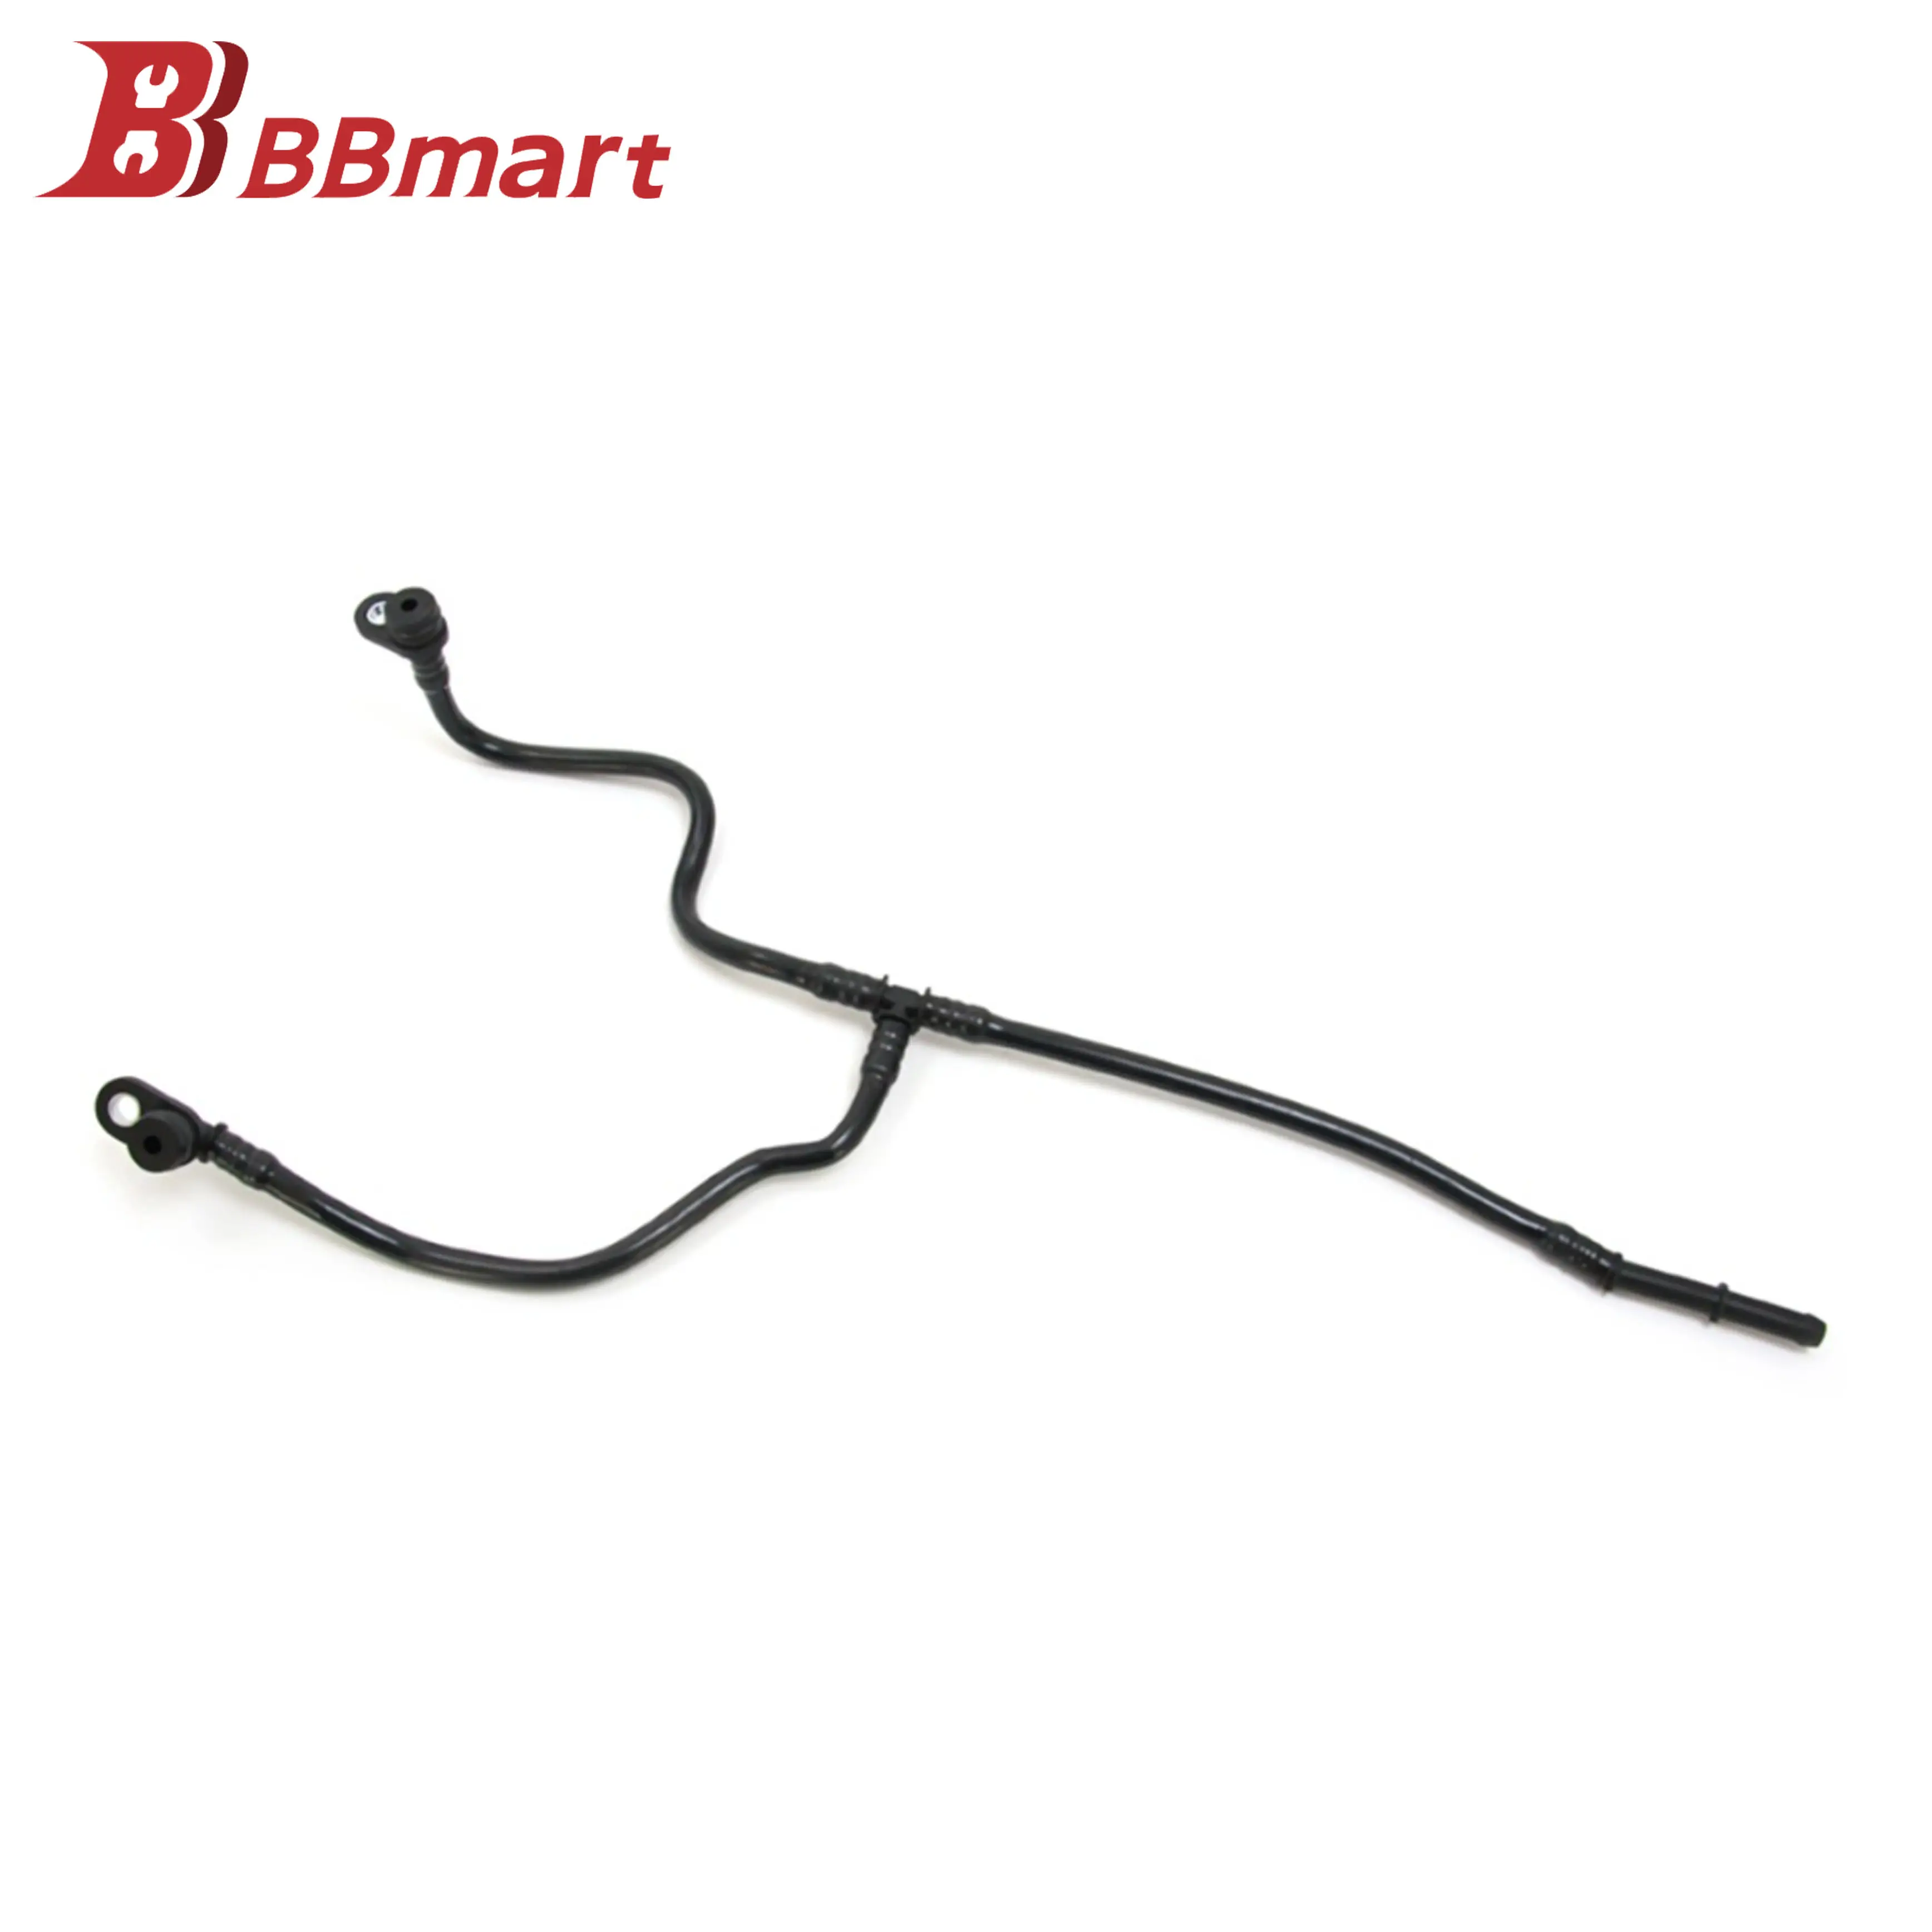 BBmart Auto Parts Coolant Hose Coolant Pipe for Porsche Panamera 946 106 026 22 94610602622